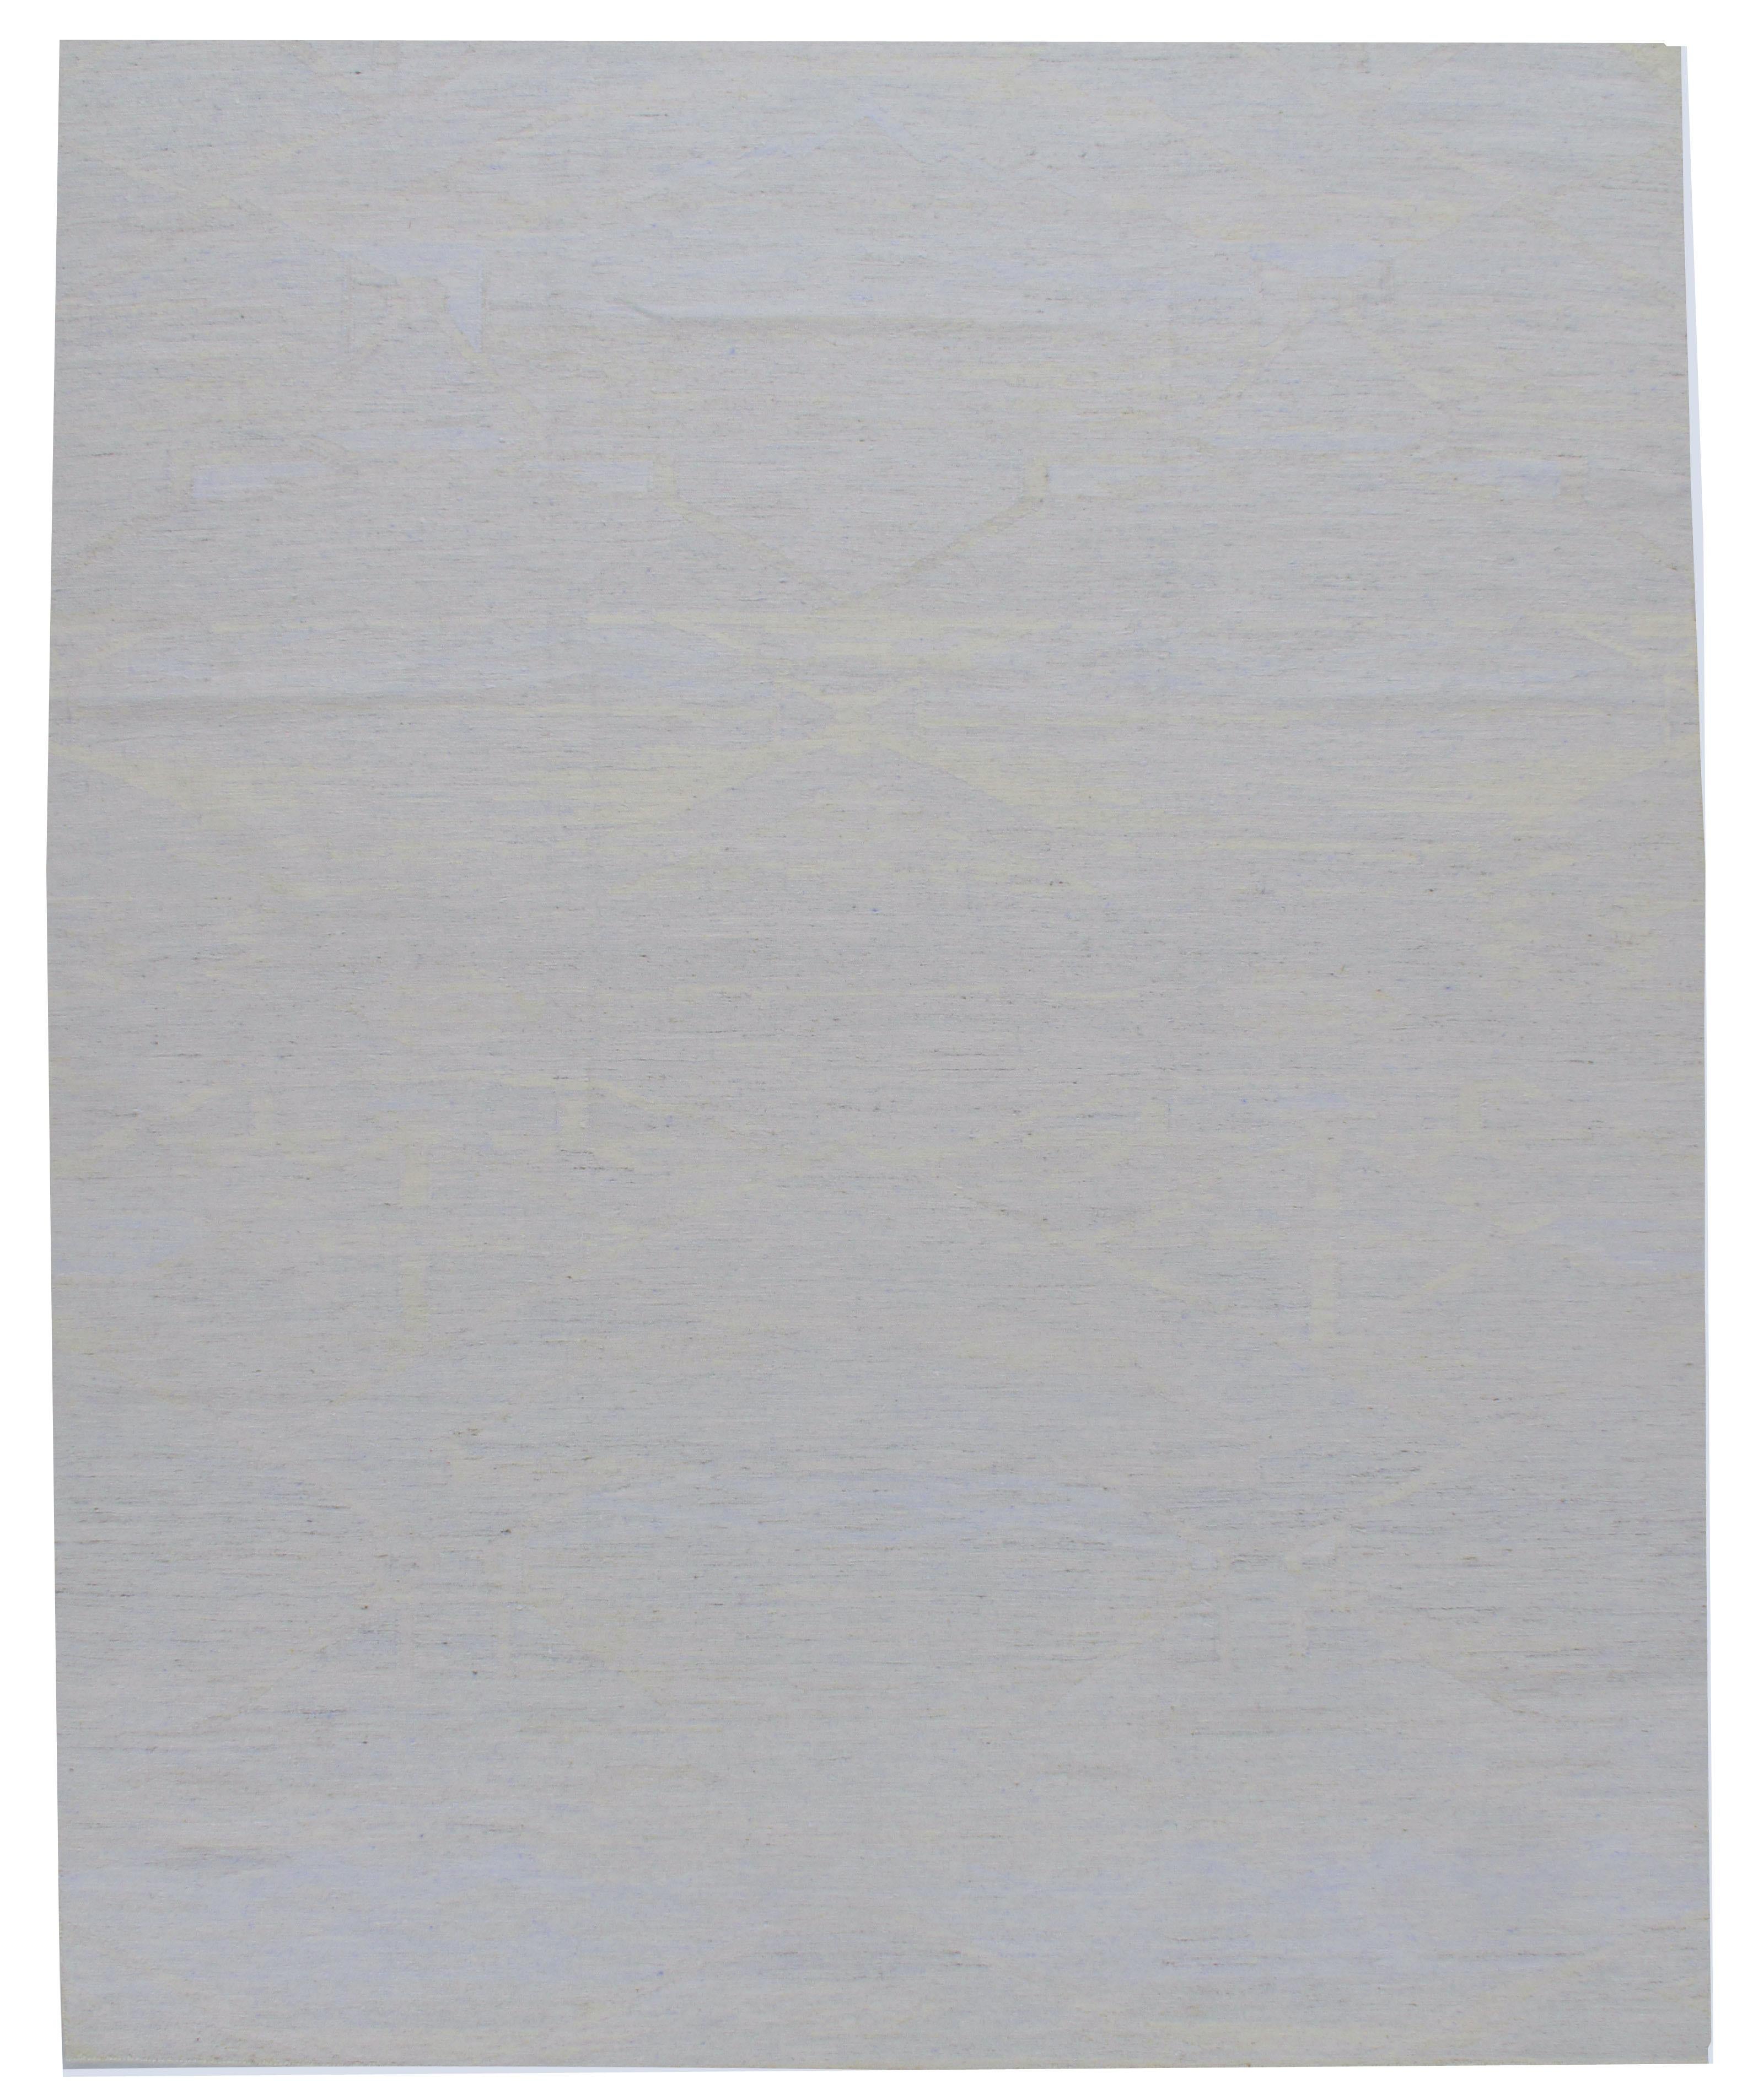 Skandinavische schwedischen Stil Flatweave Deco Teppich grau blau 10'1 x 13'6. Dieser in Indien handgewebte Kelim aus Wolle und Viskose wurde nach dem sauberen und schlichten Look schwedischer Designs gestaltet, um einen Teppich zu schaffen, der